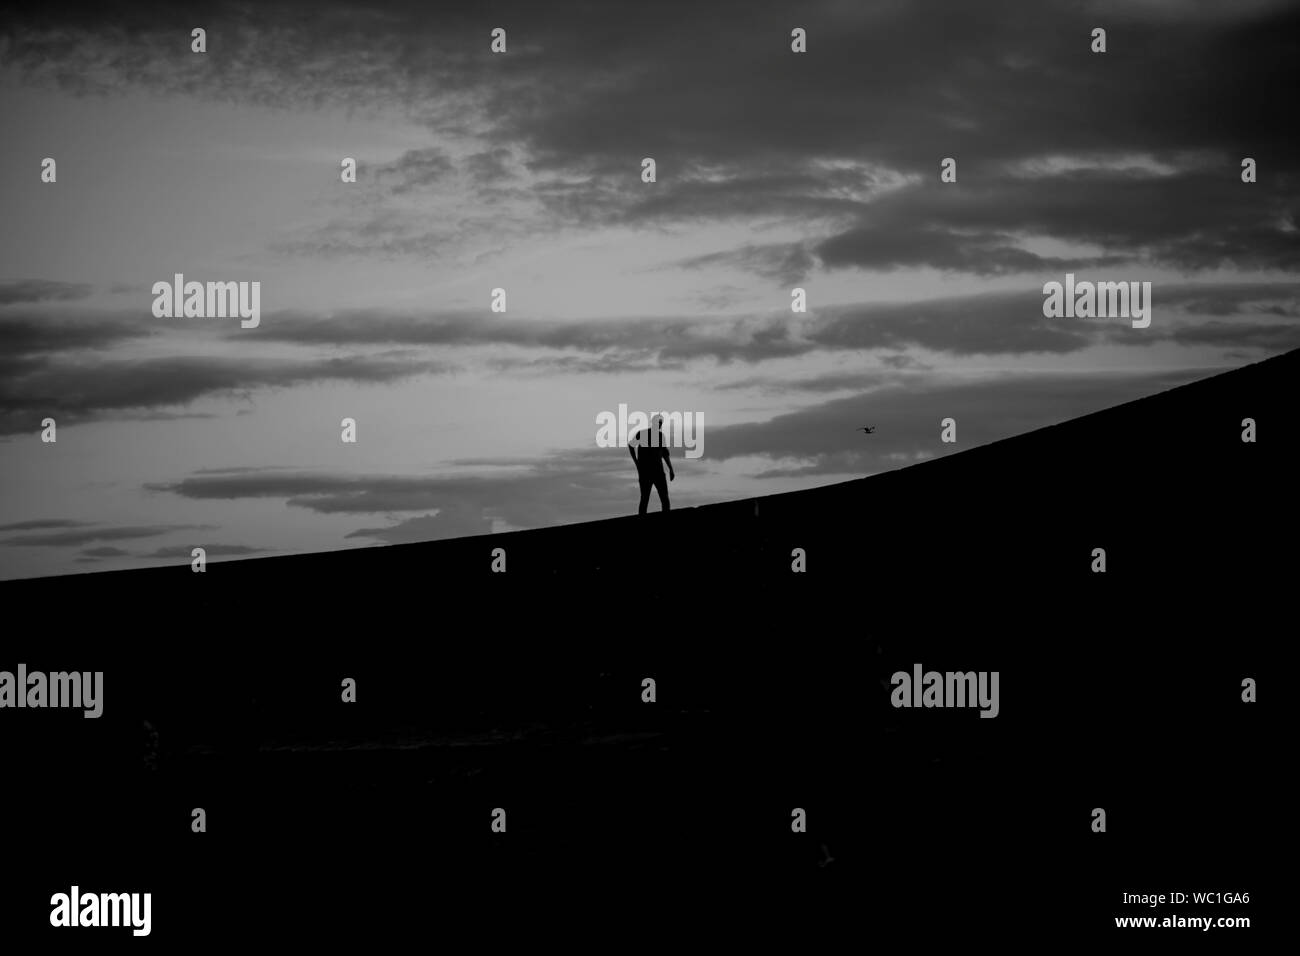 Silhouette Abbildung zu Fuß auf einem Ziegelstein pier gegen eine bewölkte Himmel Stockfoto